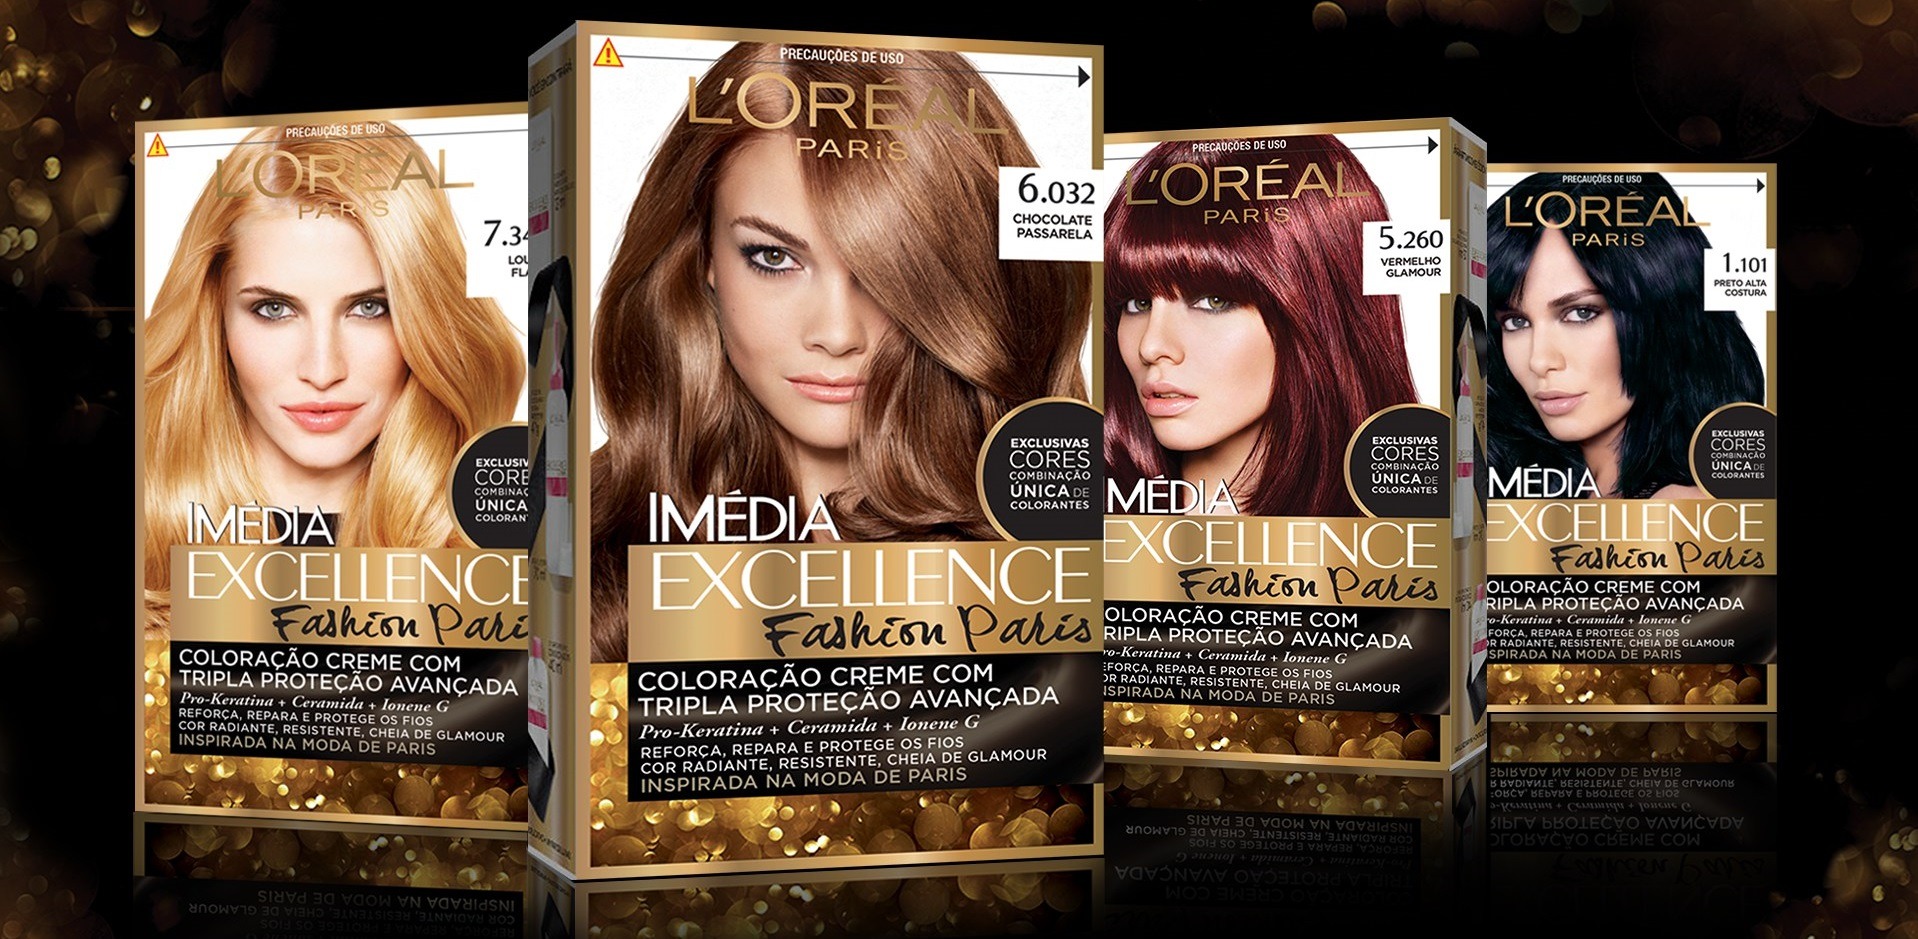 کیت رنگ مو لورآل مدل Excellence شماره 3